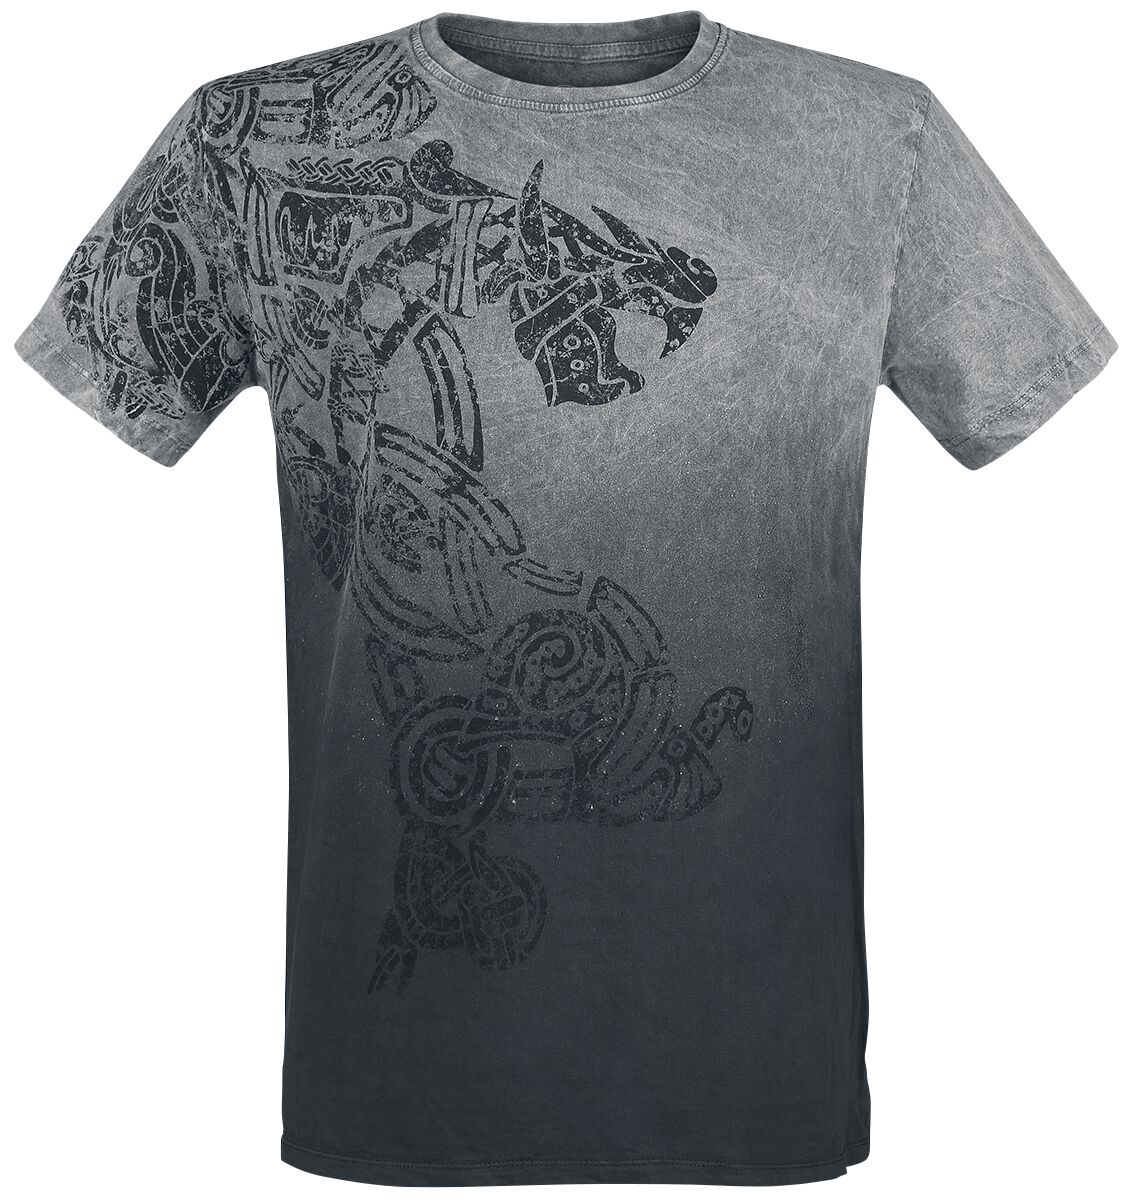 Outer Vision T-Shirt - Dragon Tattoo - S bis 4XL - für Männer - Größe 4XL - grau